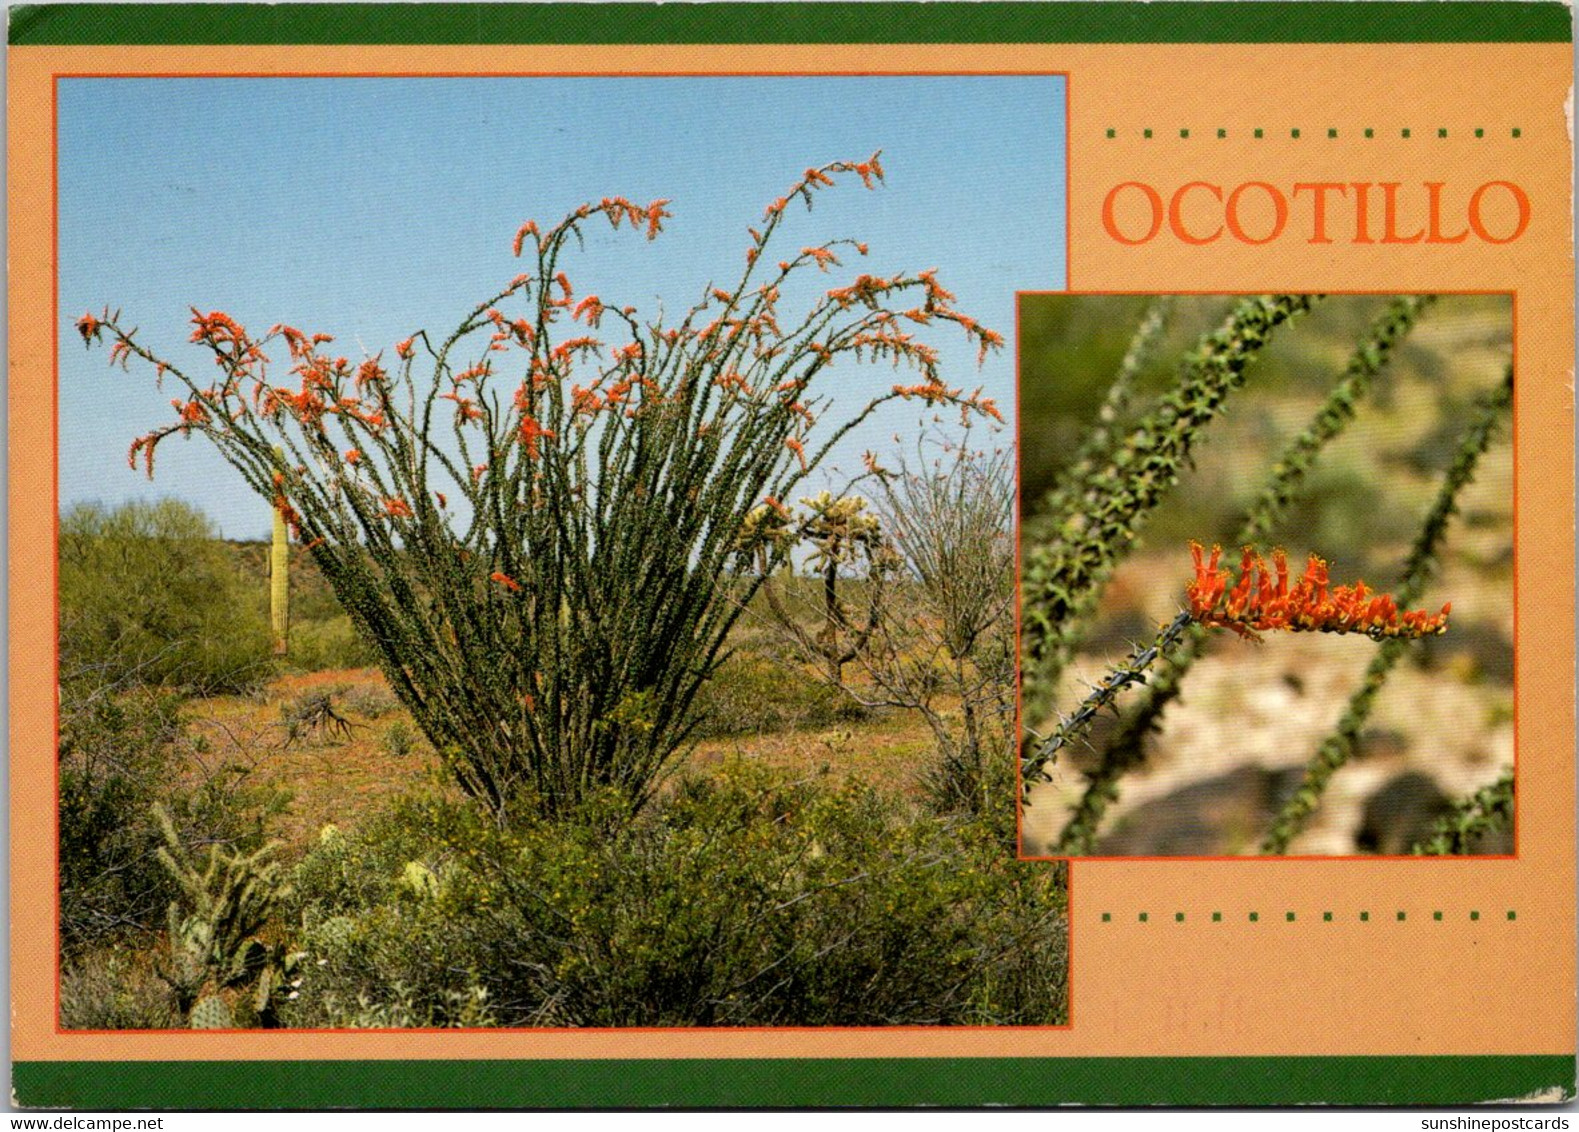 Cactus Ocotillo In Bloom, 1999 - Cactus